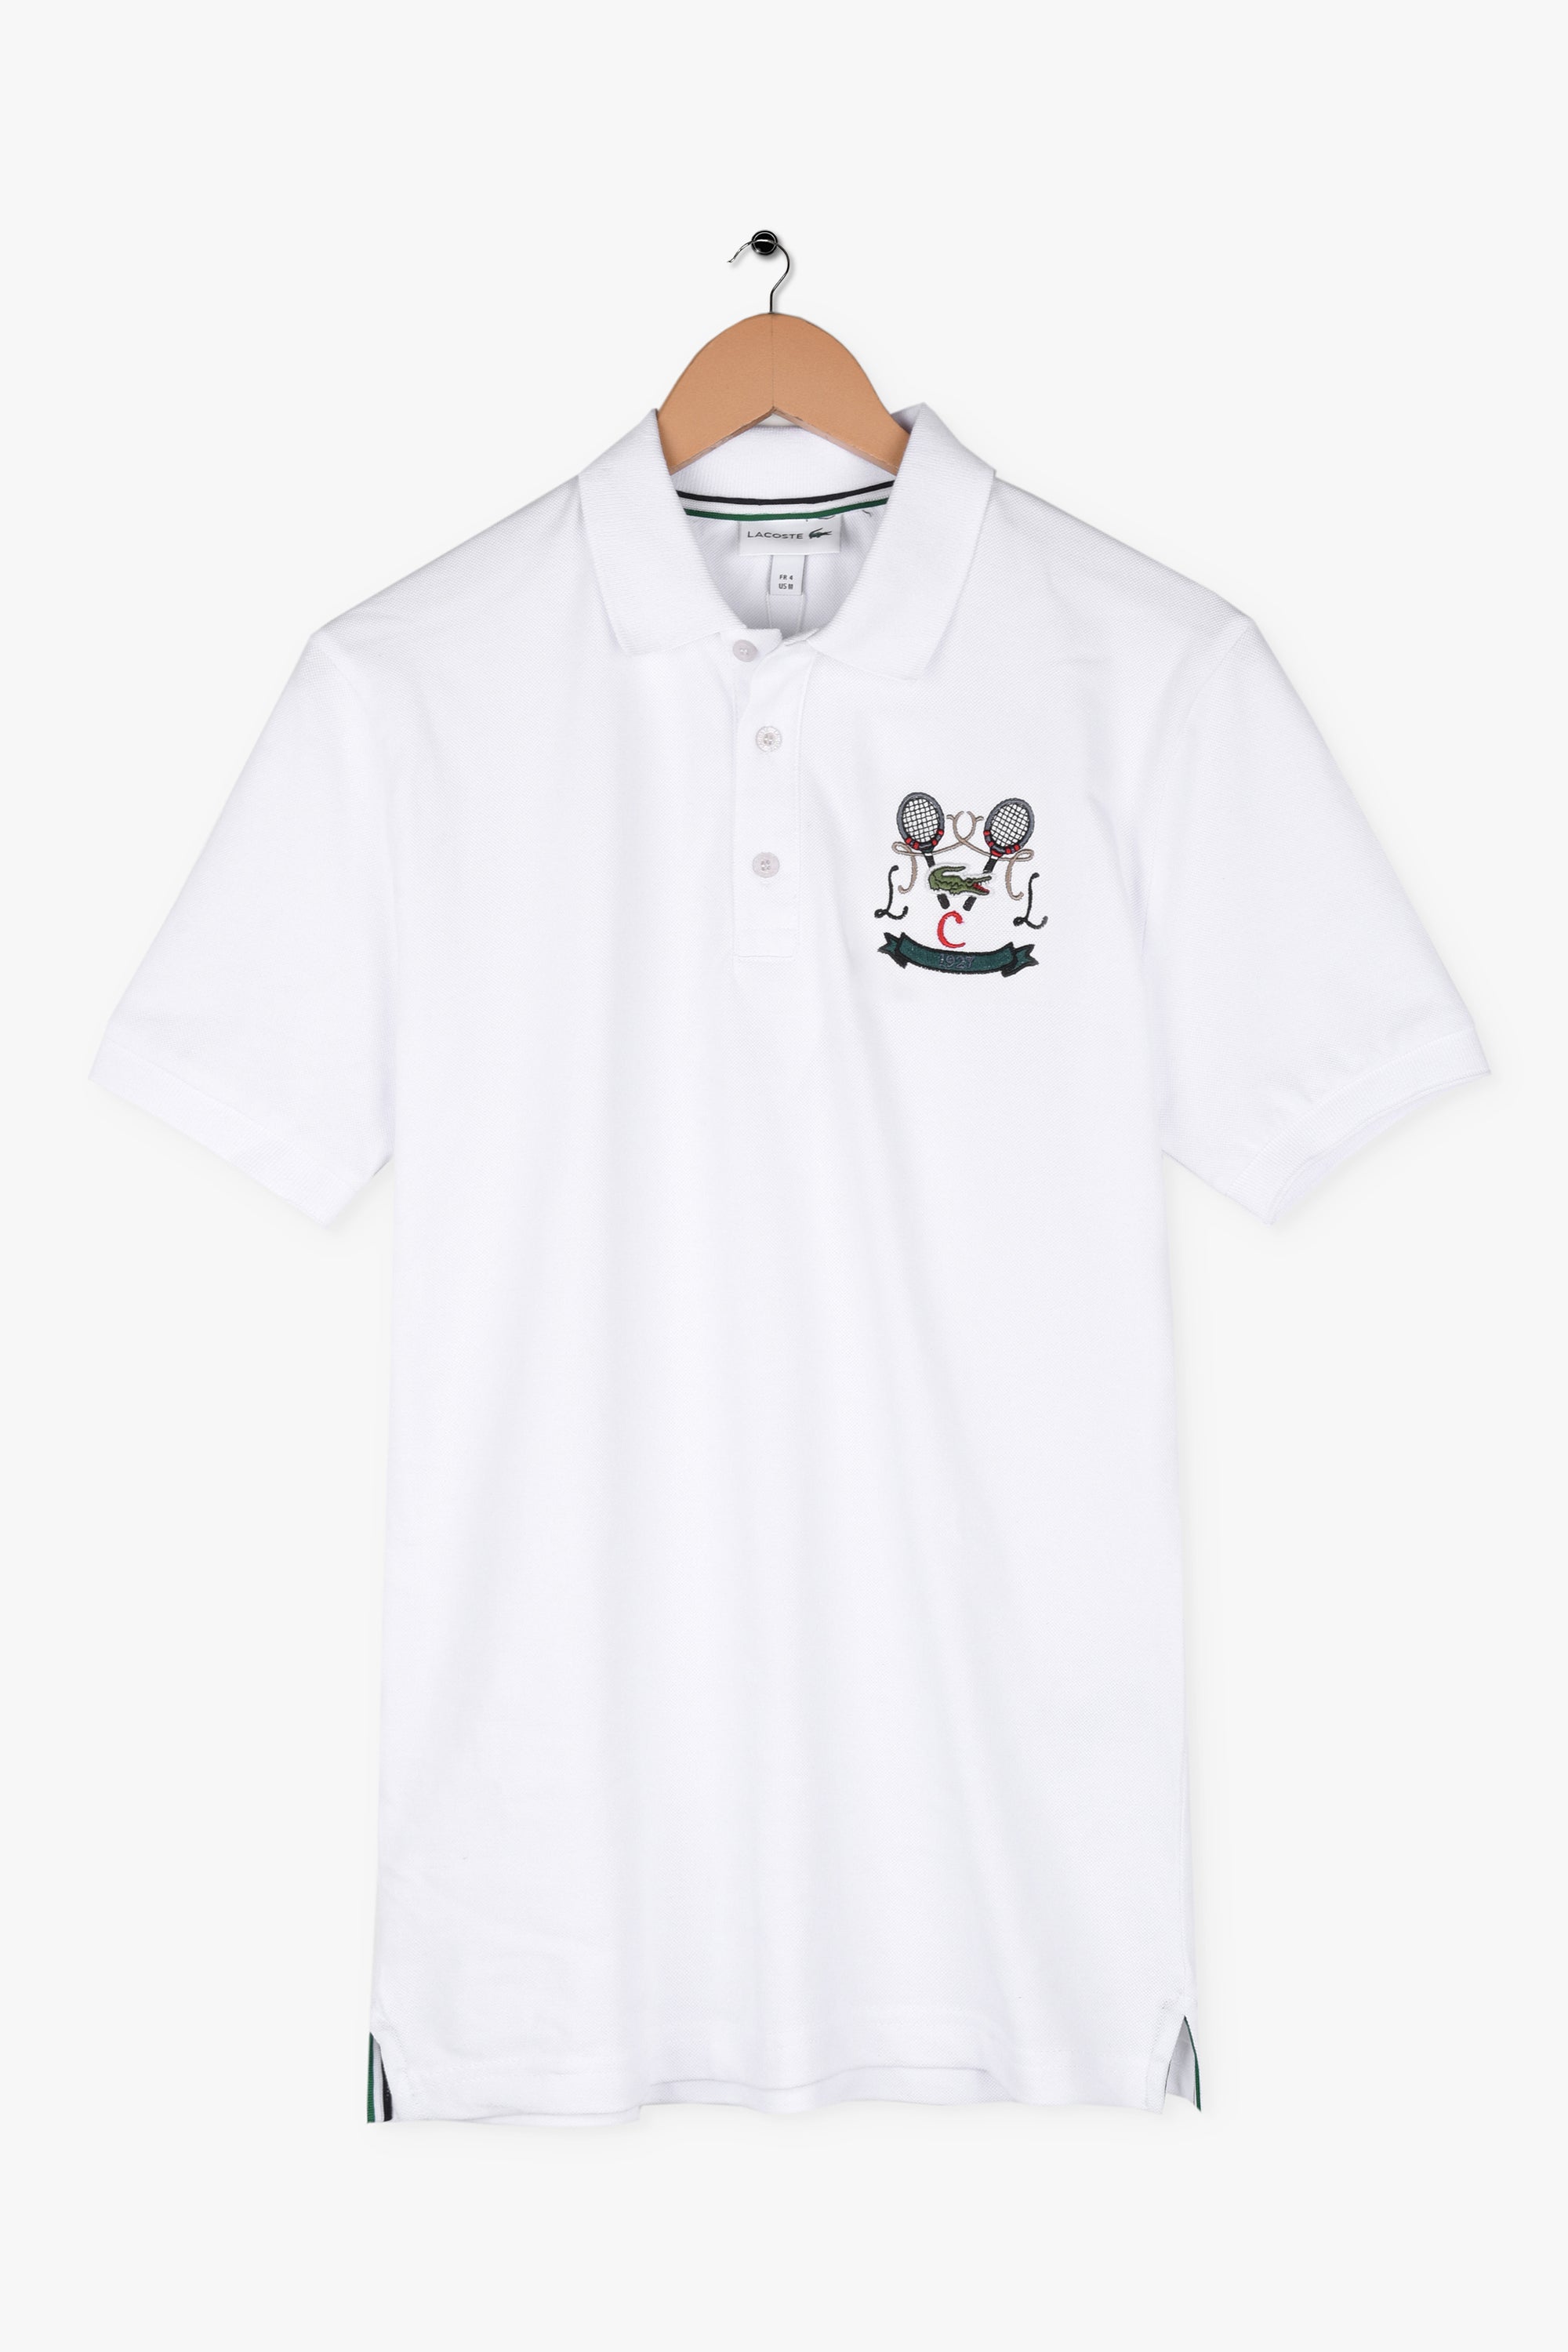 Lacoste Tennis Collection Polo Shirt